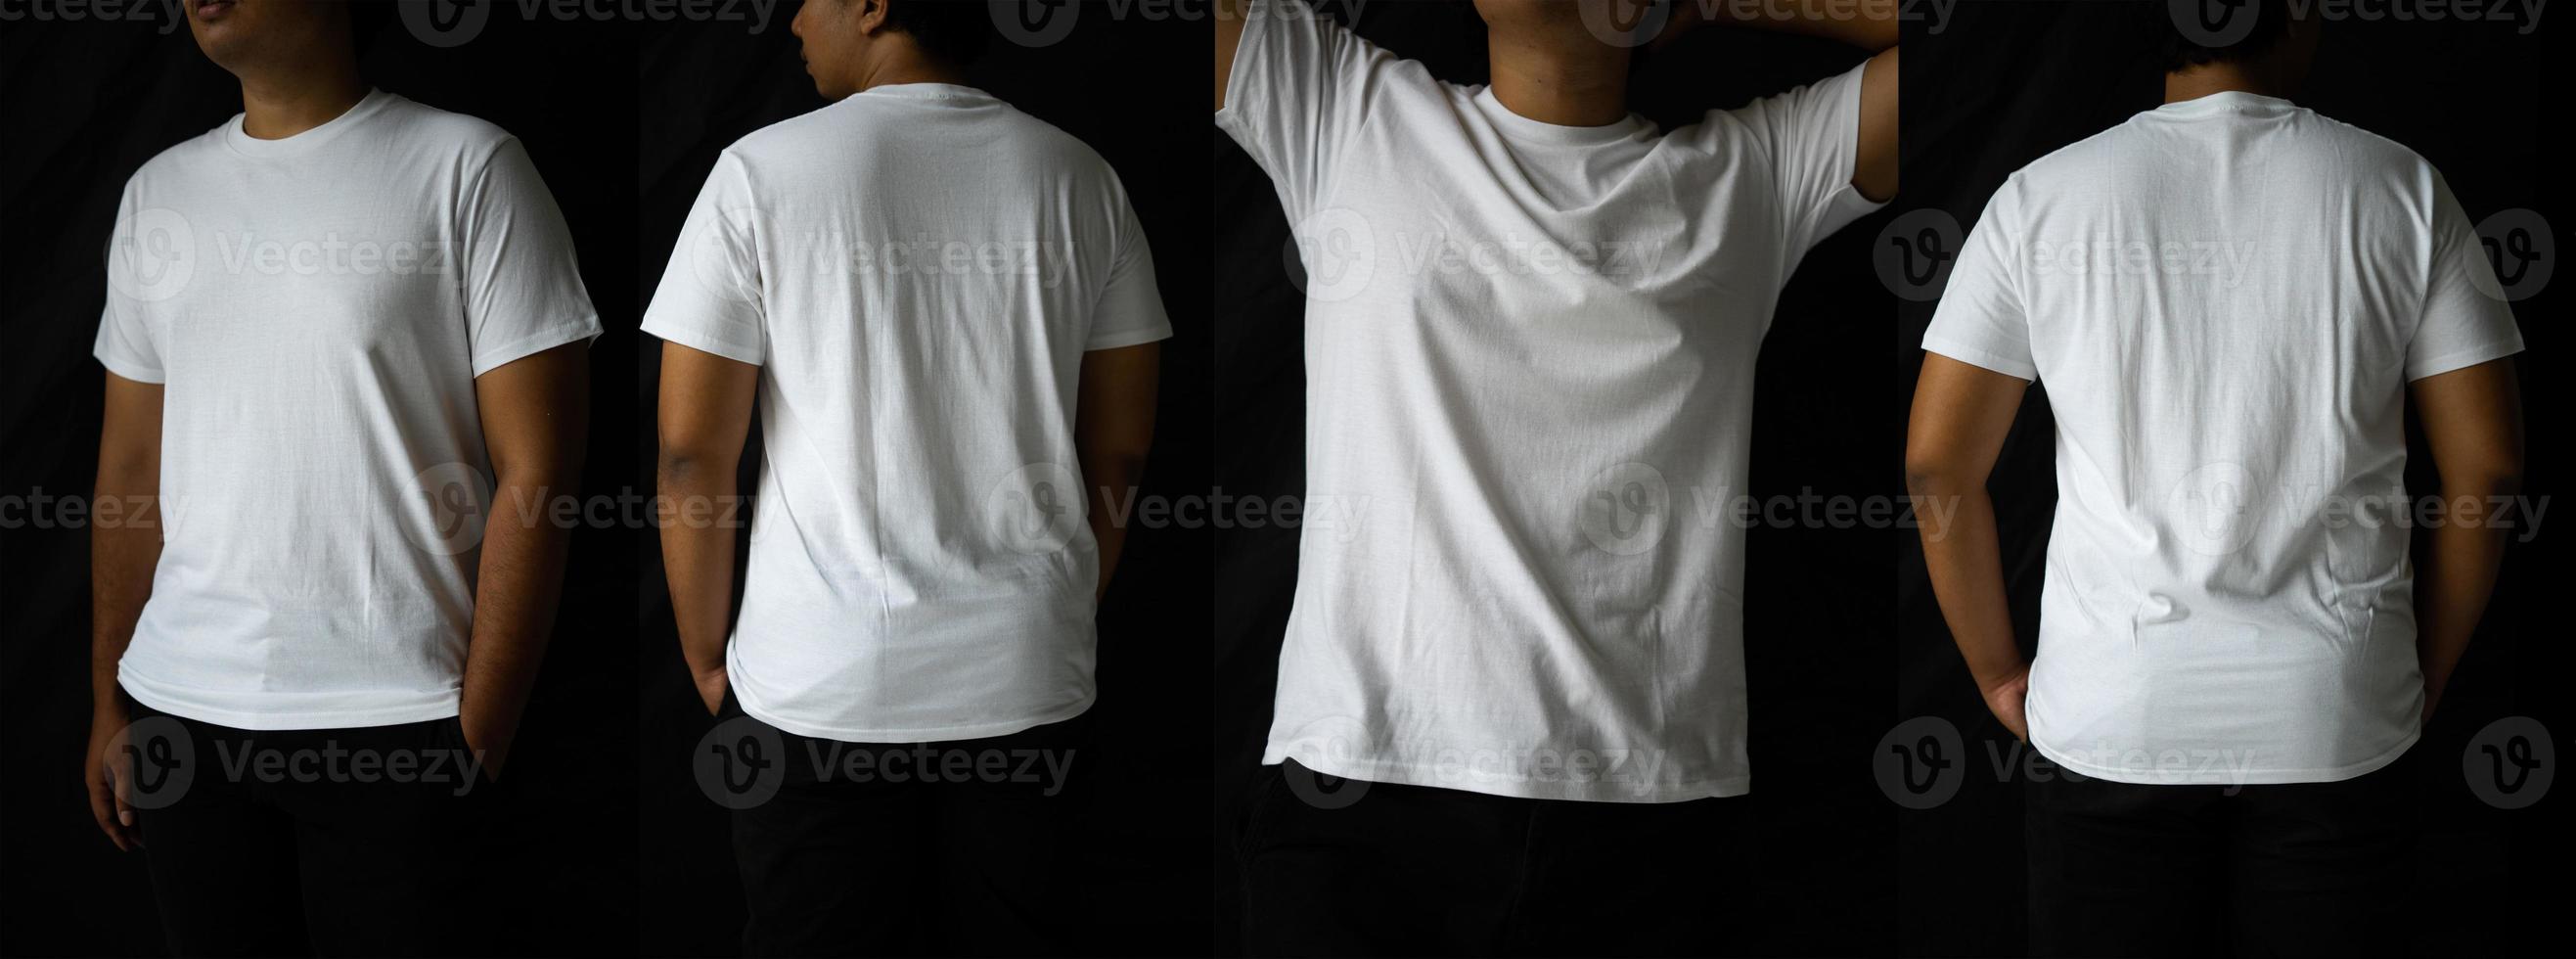 les hommes élégants portent des t-shirts unis pour les maquettes. La conception de t-shirt vierge s'affiche à l'arrière et à l'avant. photo